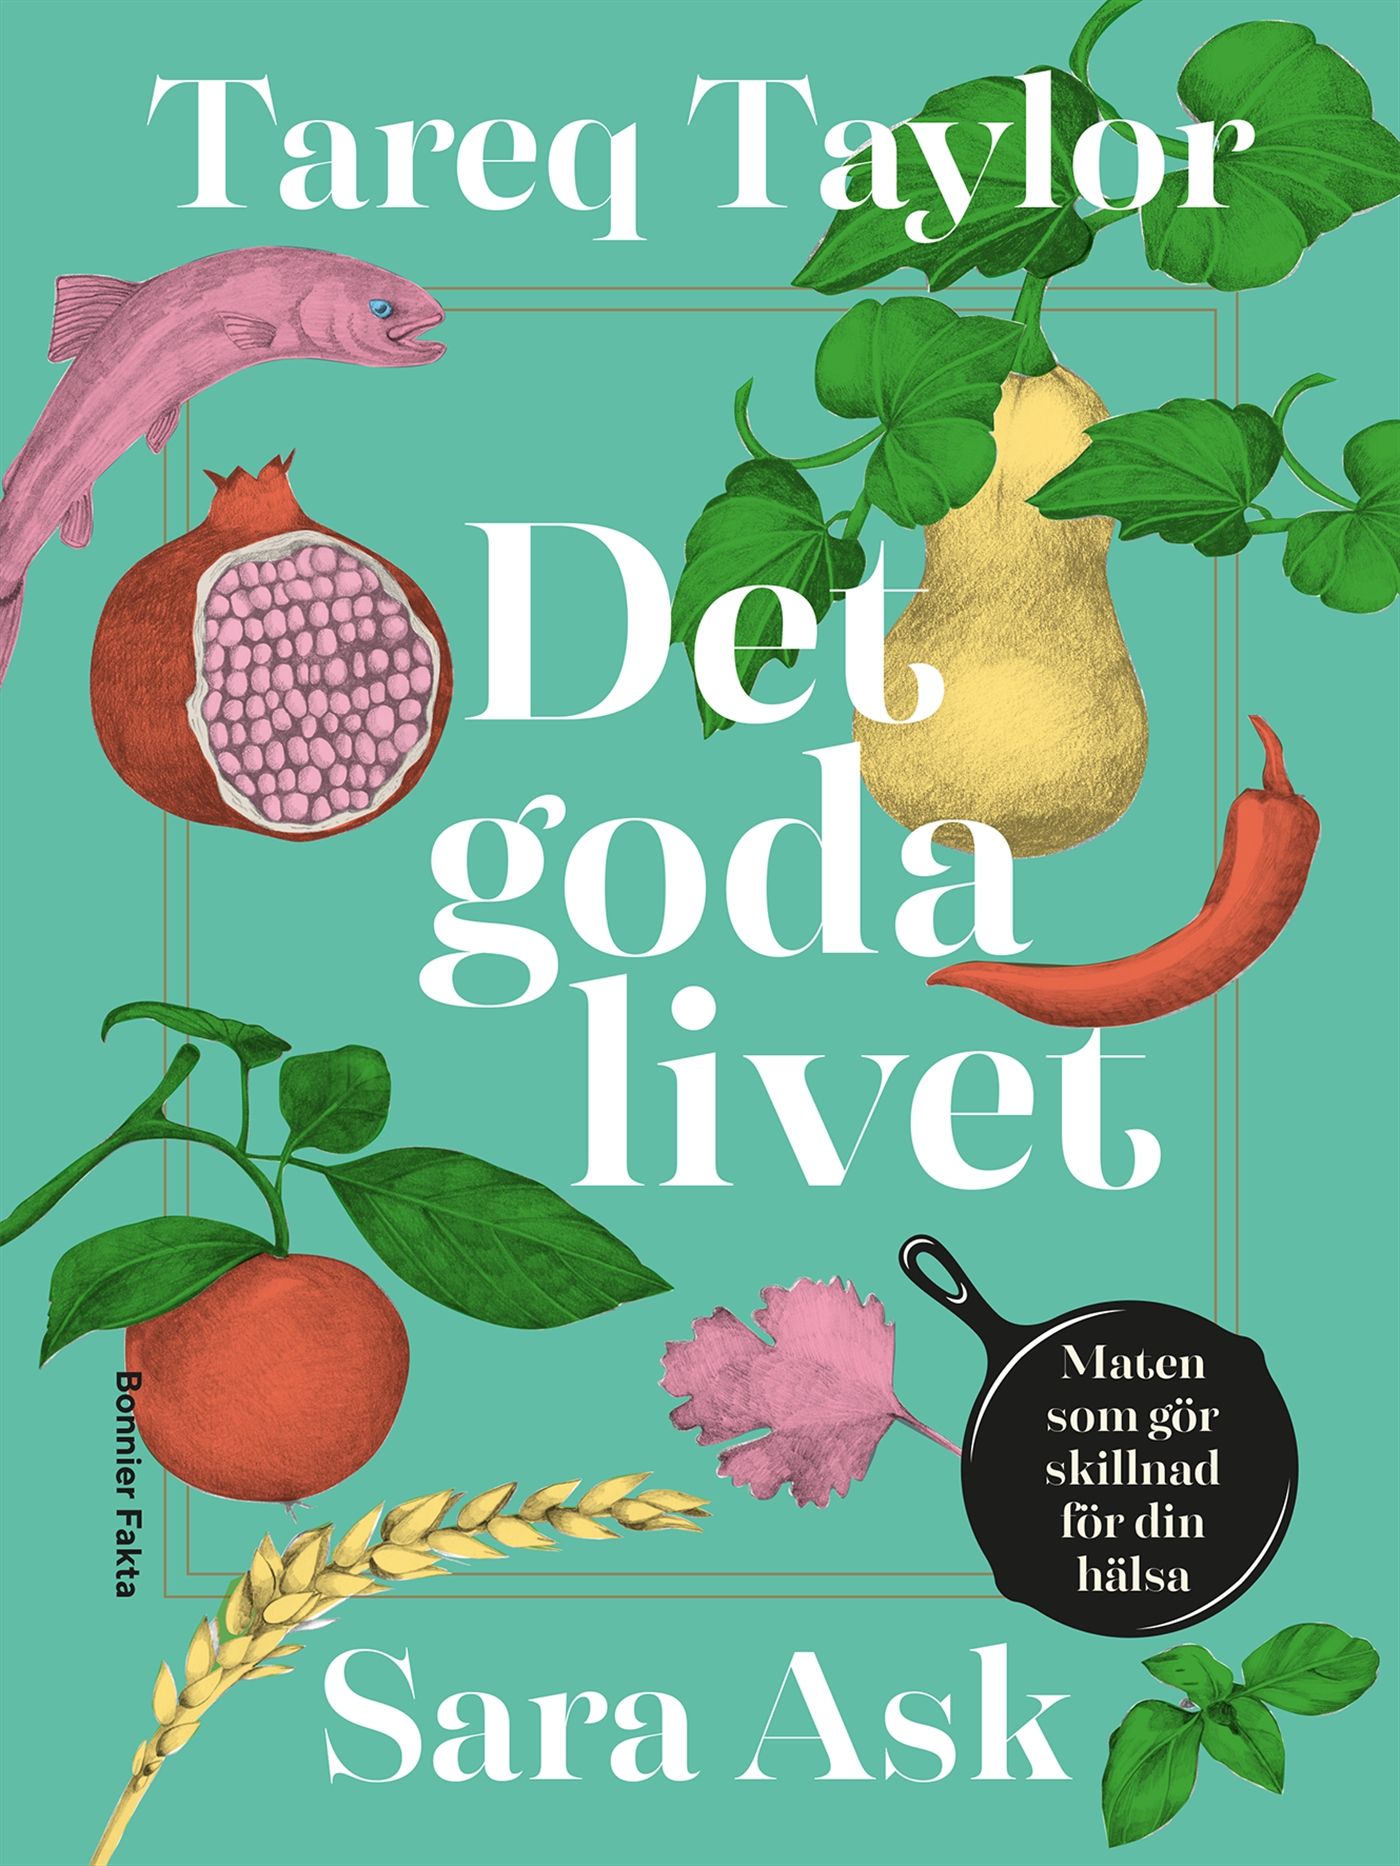 Det goda livet : Maten som gör skillnad för din hälsa, e-bog af Sara Ask, Tareq Taylor